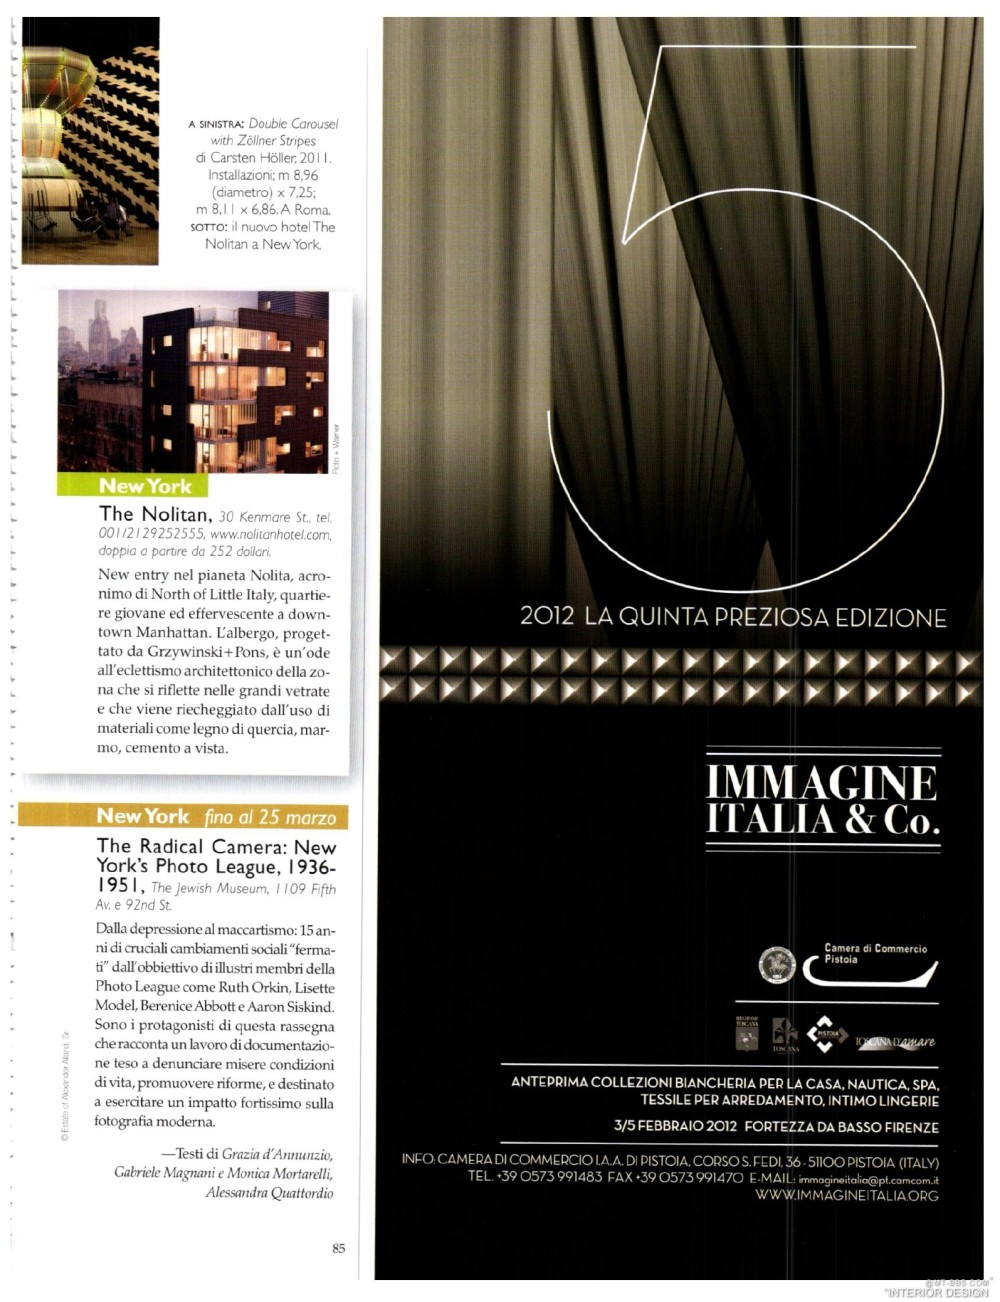 意大利AD 杂志 2012年全年JPG高清版本 全免（上传完毕）_0087.jpg